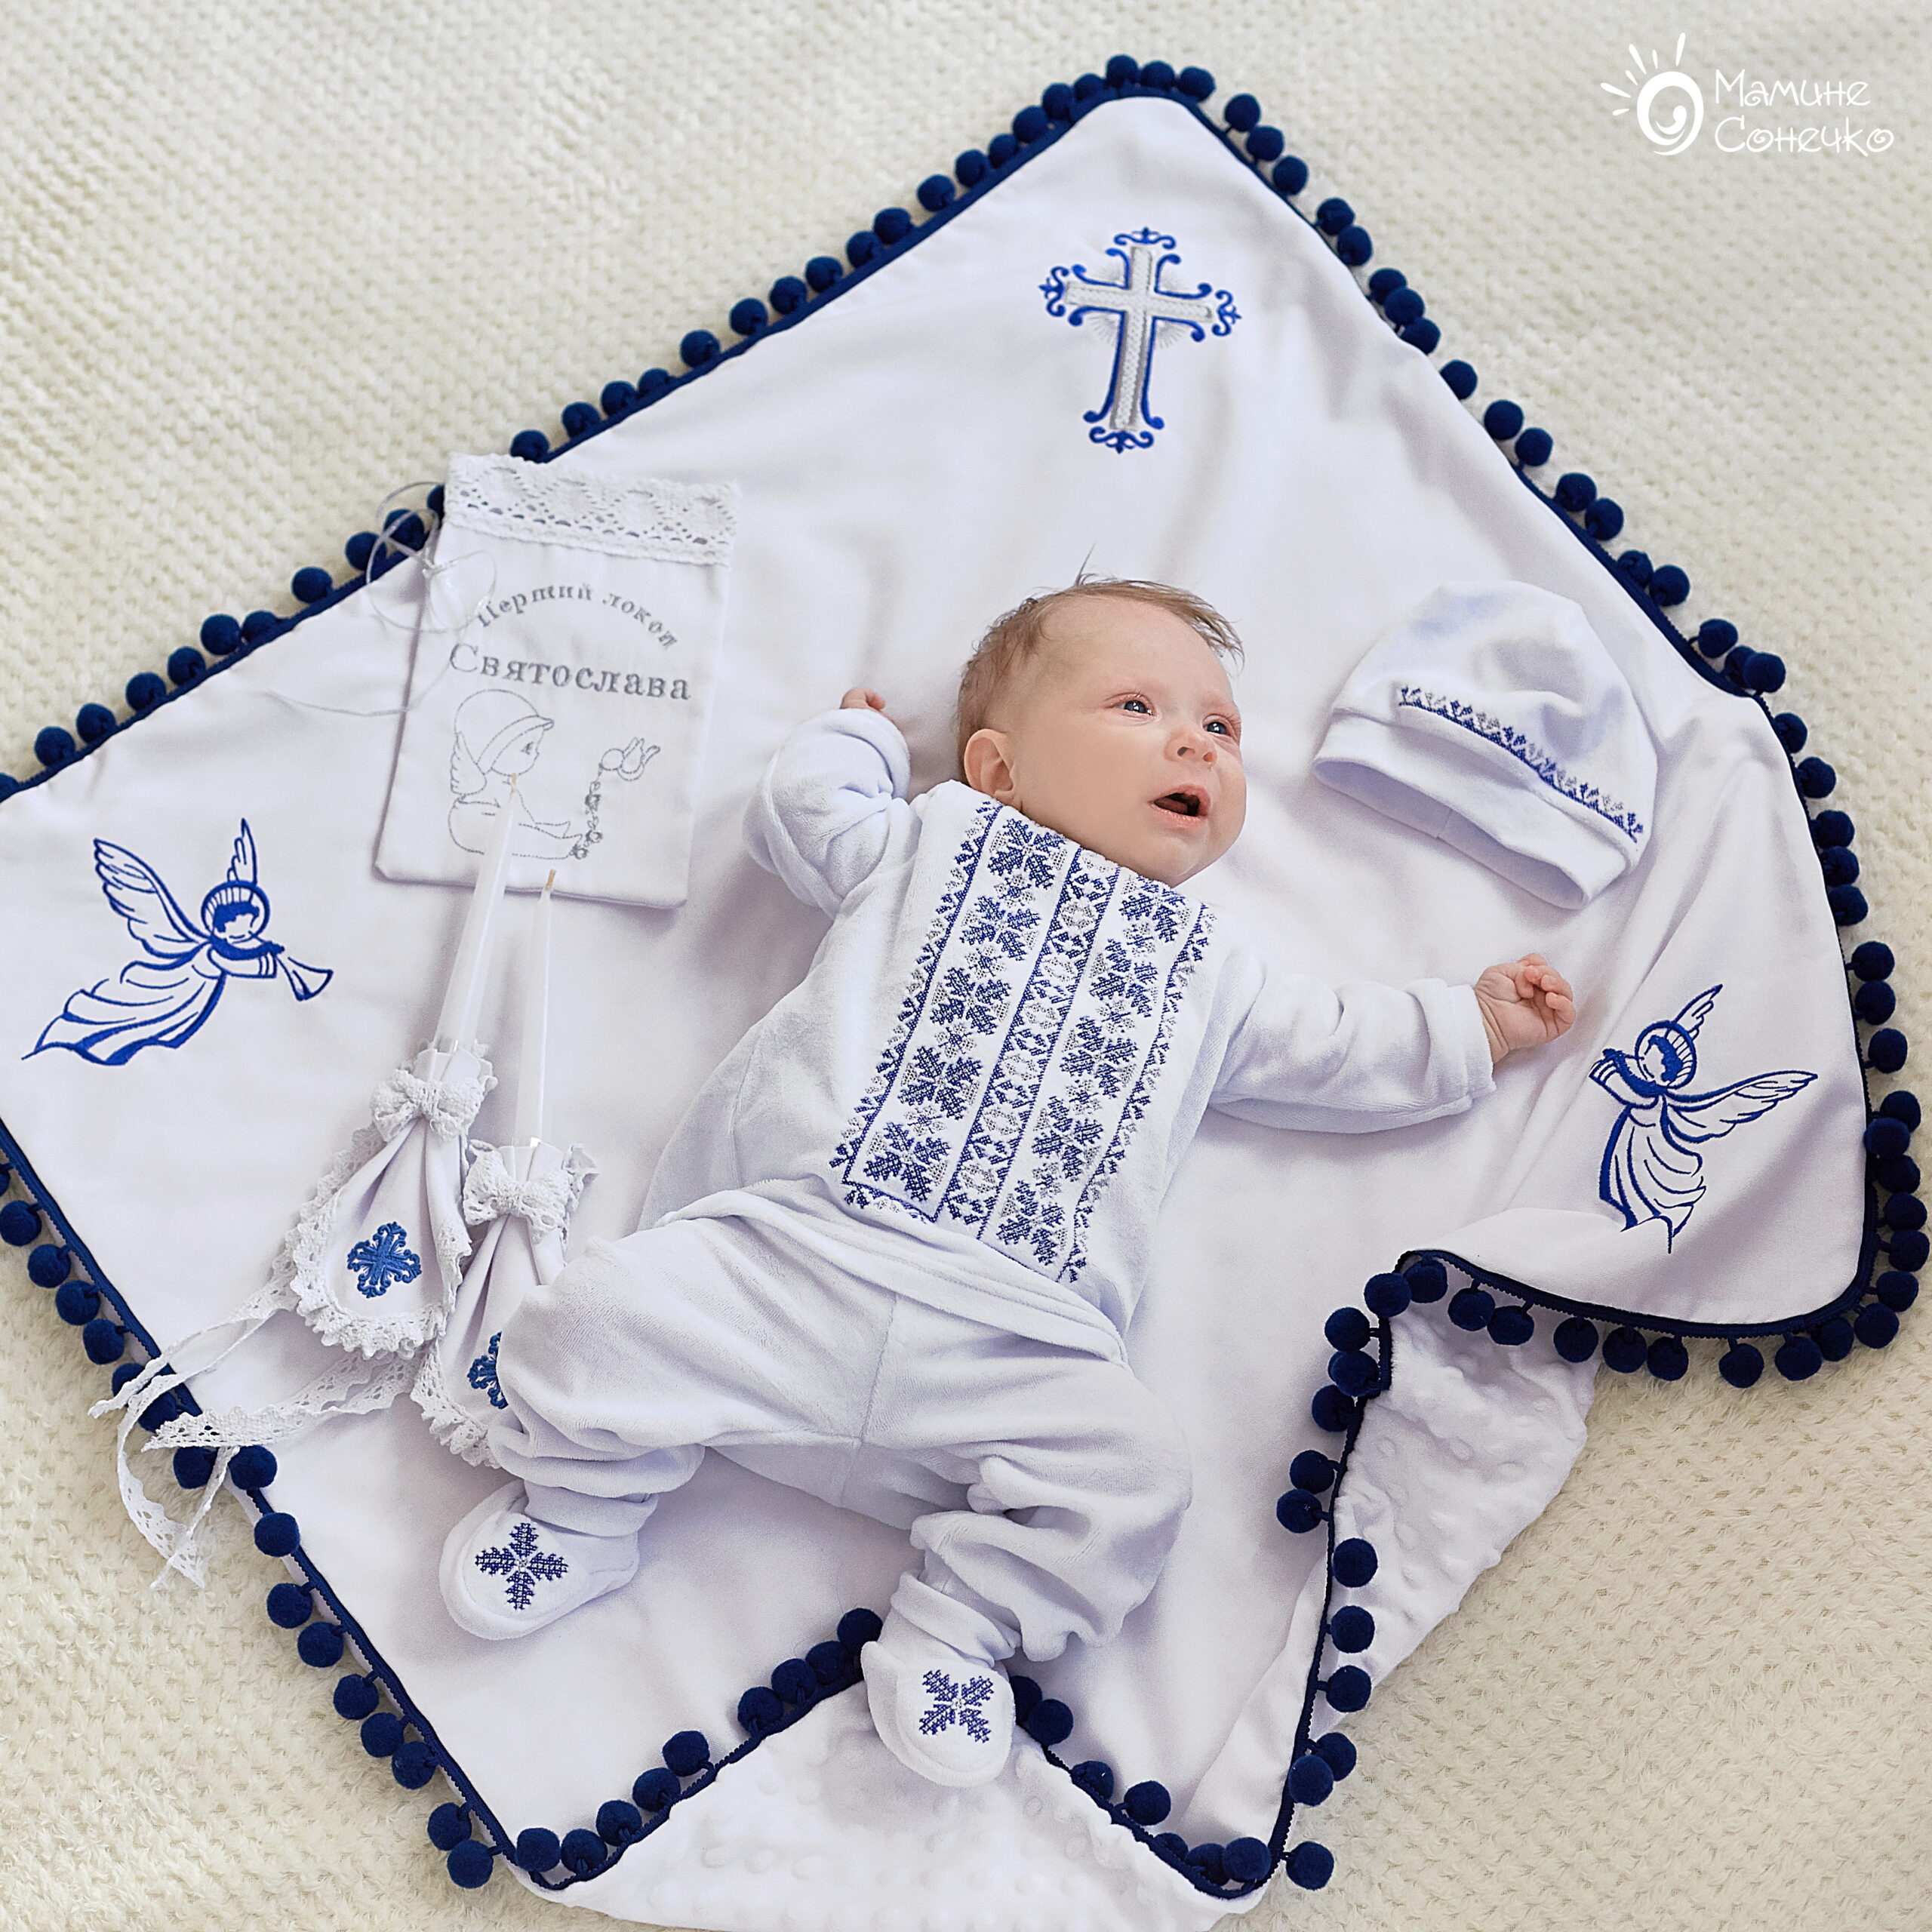 Полный комплект для крещения мальчика “Хвоя” серебристо-синяя, велюр